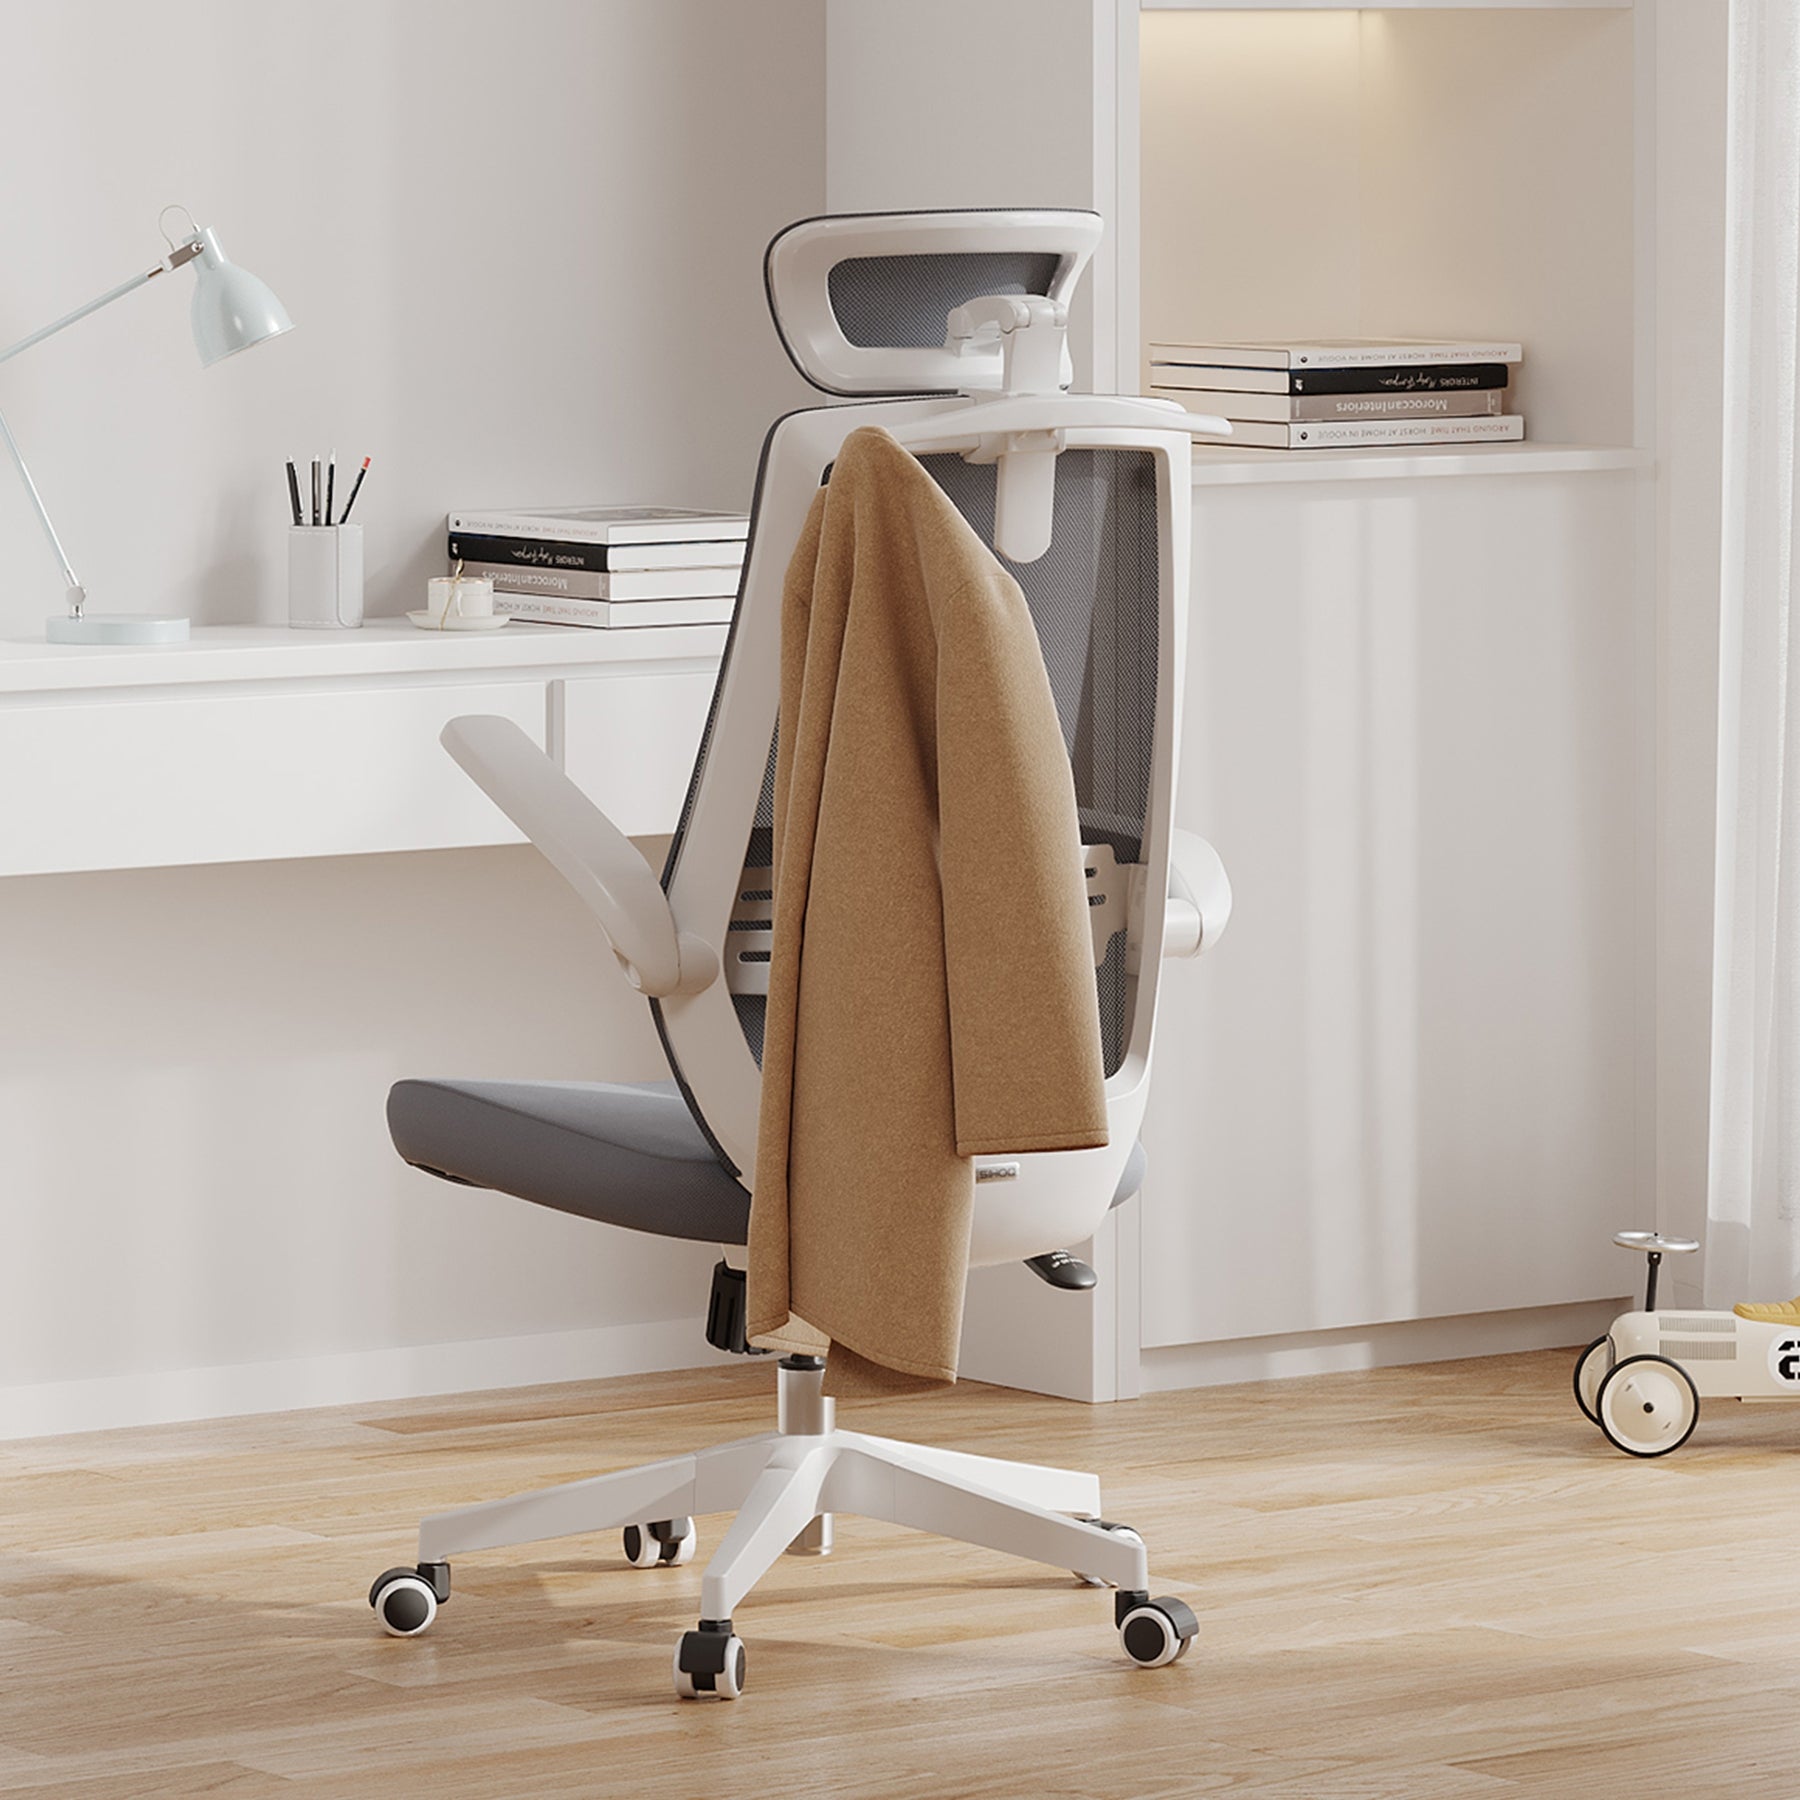 <tc>Sihoo M76A sedia ergonomica per ufficio con appendiabiti</tc>